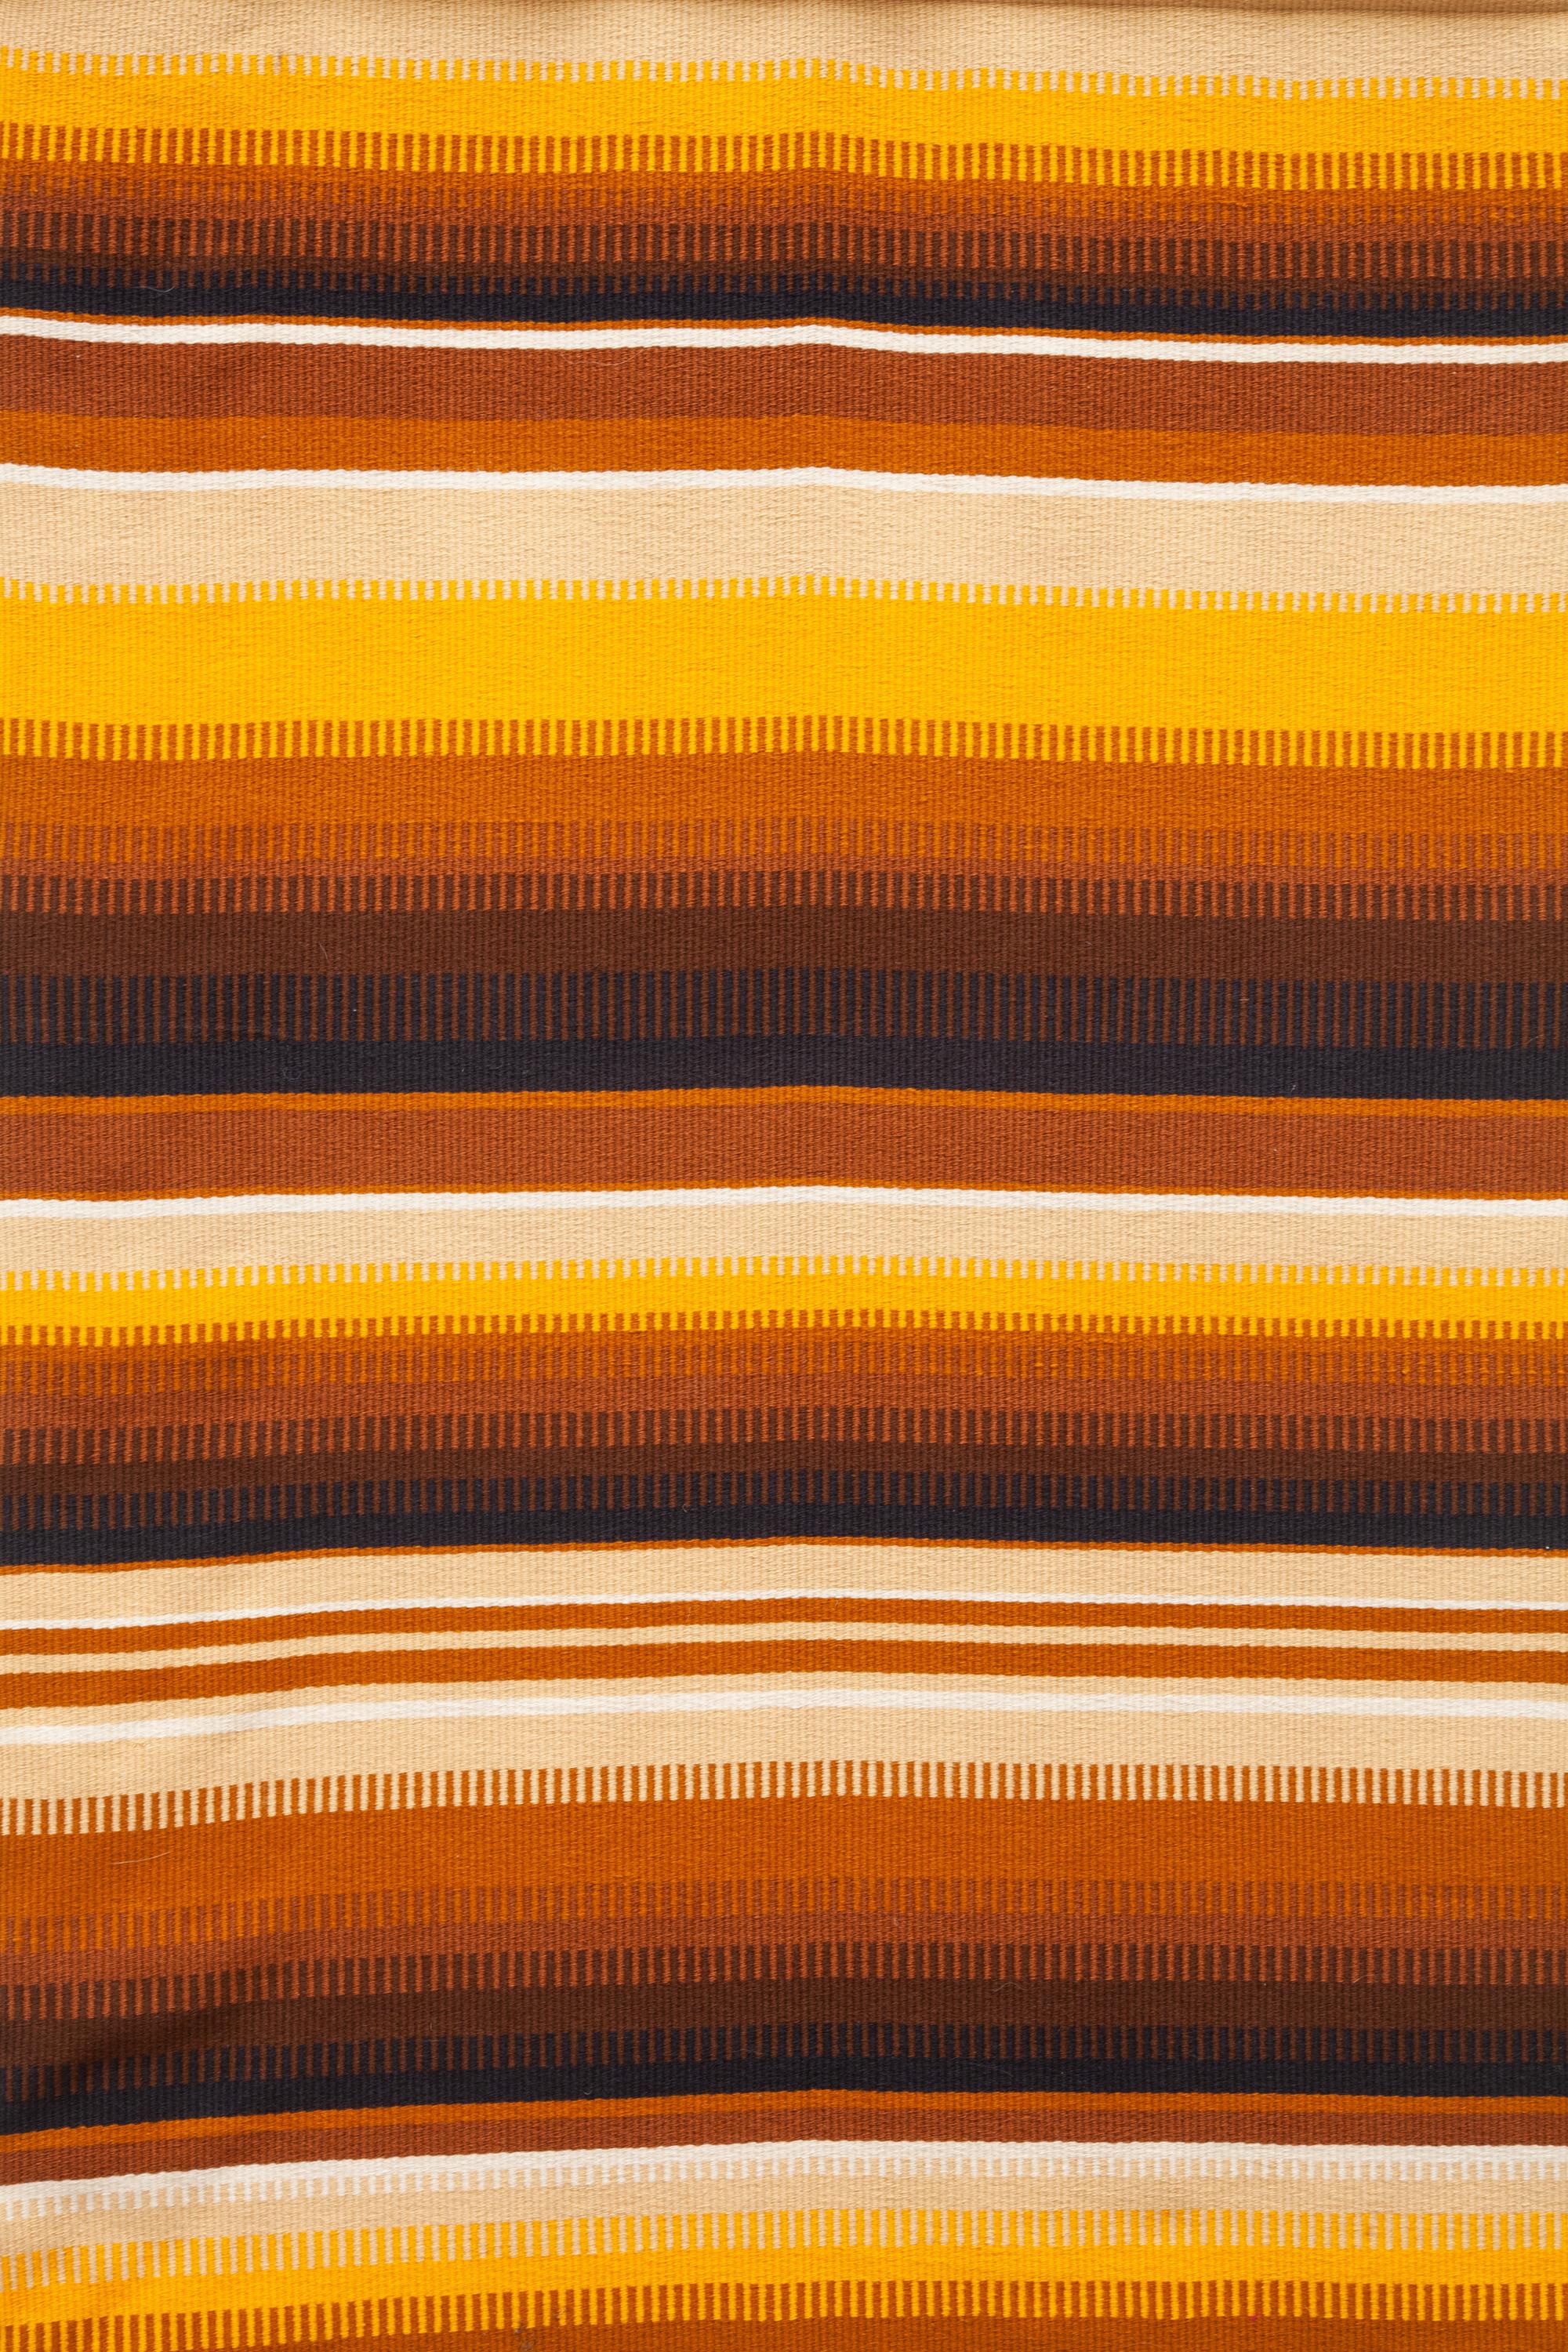 Tapisserie murale en laine tissée, conçue en Suède dans les années 1950.
Tapisserie vintage en laine présentant une rayure ombrée en noir, marron, jaune et crème.
Très bon état.
 